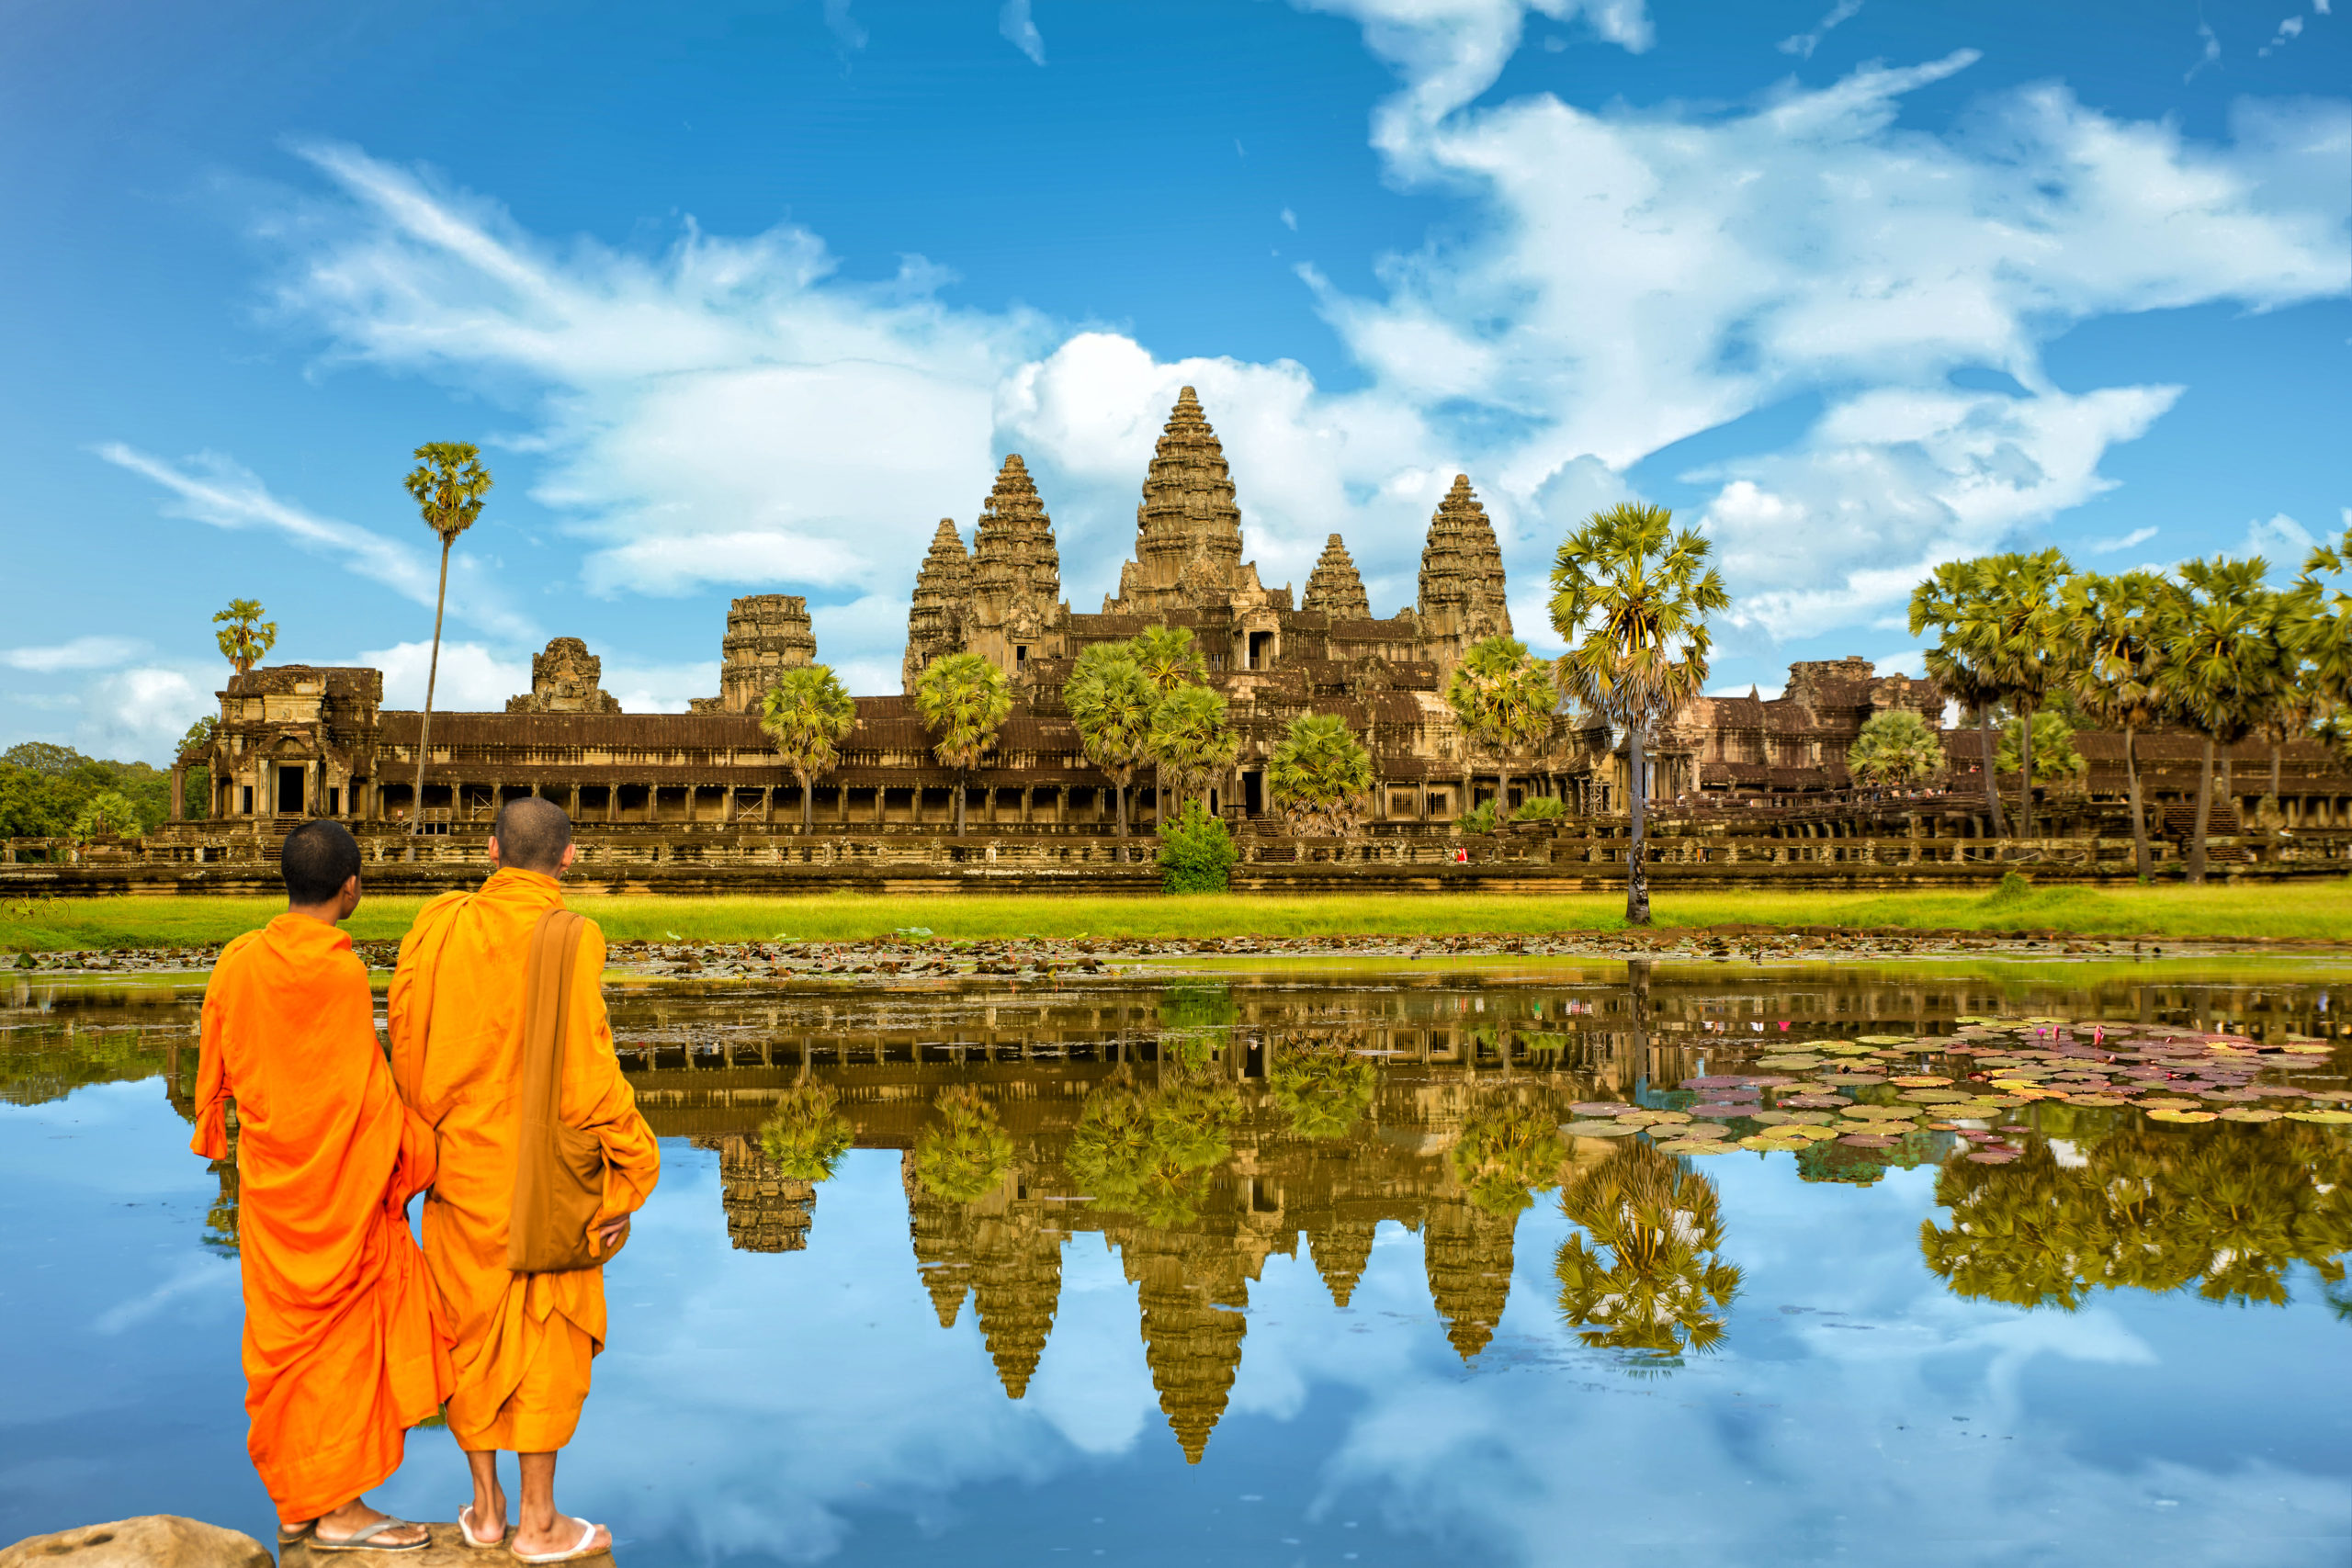 Angkor authentique